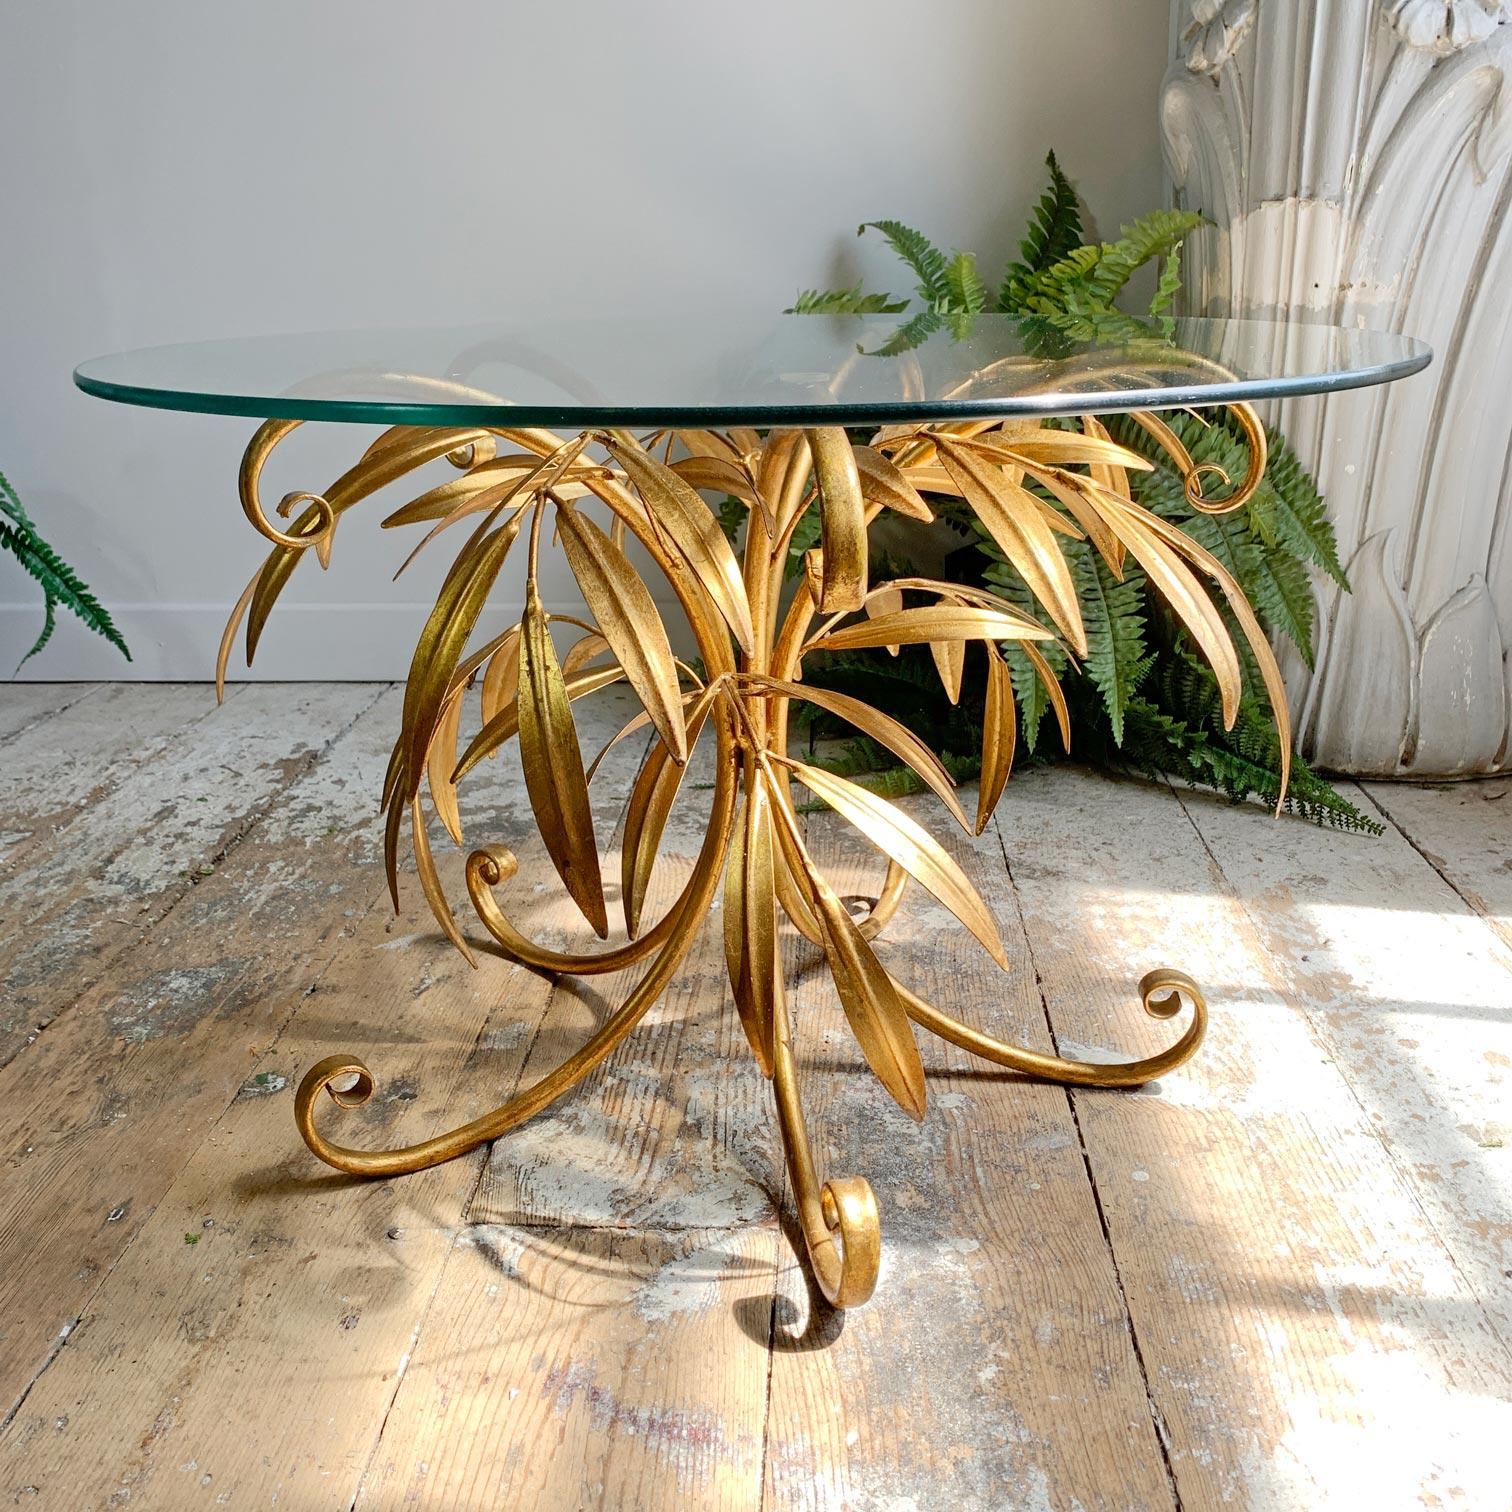 Magnifique table basse ou table centrale italienne des années 1950, ornée de feuilles et de branches dorées. L'étiquette métallique d'origine attestant de l'authenticité italienne est toujours présente. Une petite feuille a été perdue, ce qui est